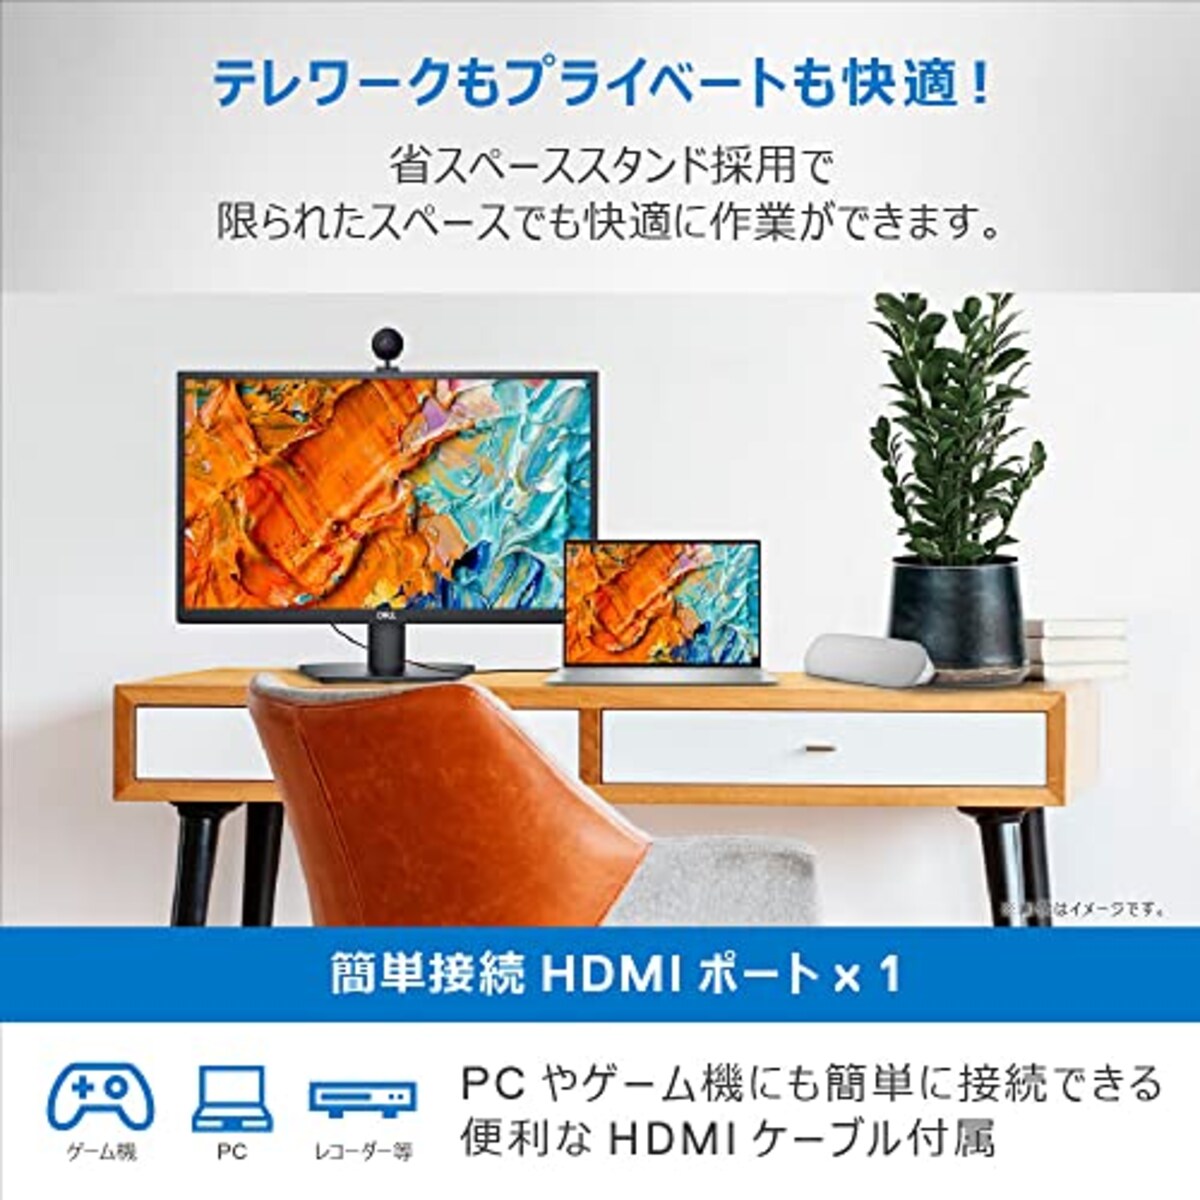  【Amazon.co.jp限定】Dell SE2422H 23.8インチ モニター ディスプレイ (3年間交換保証/FHD/VA 非光沢/HDMI D-Sub15ピン/傾き調整/AMD FreeSync)画像4 